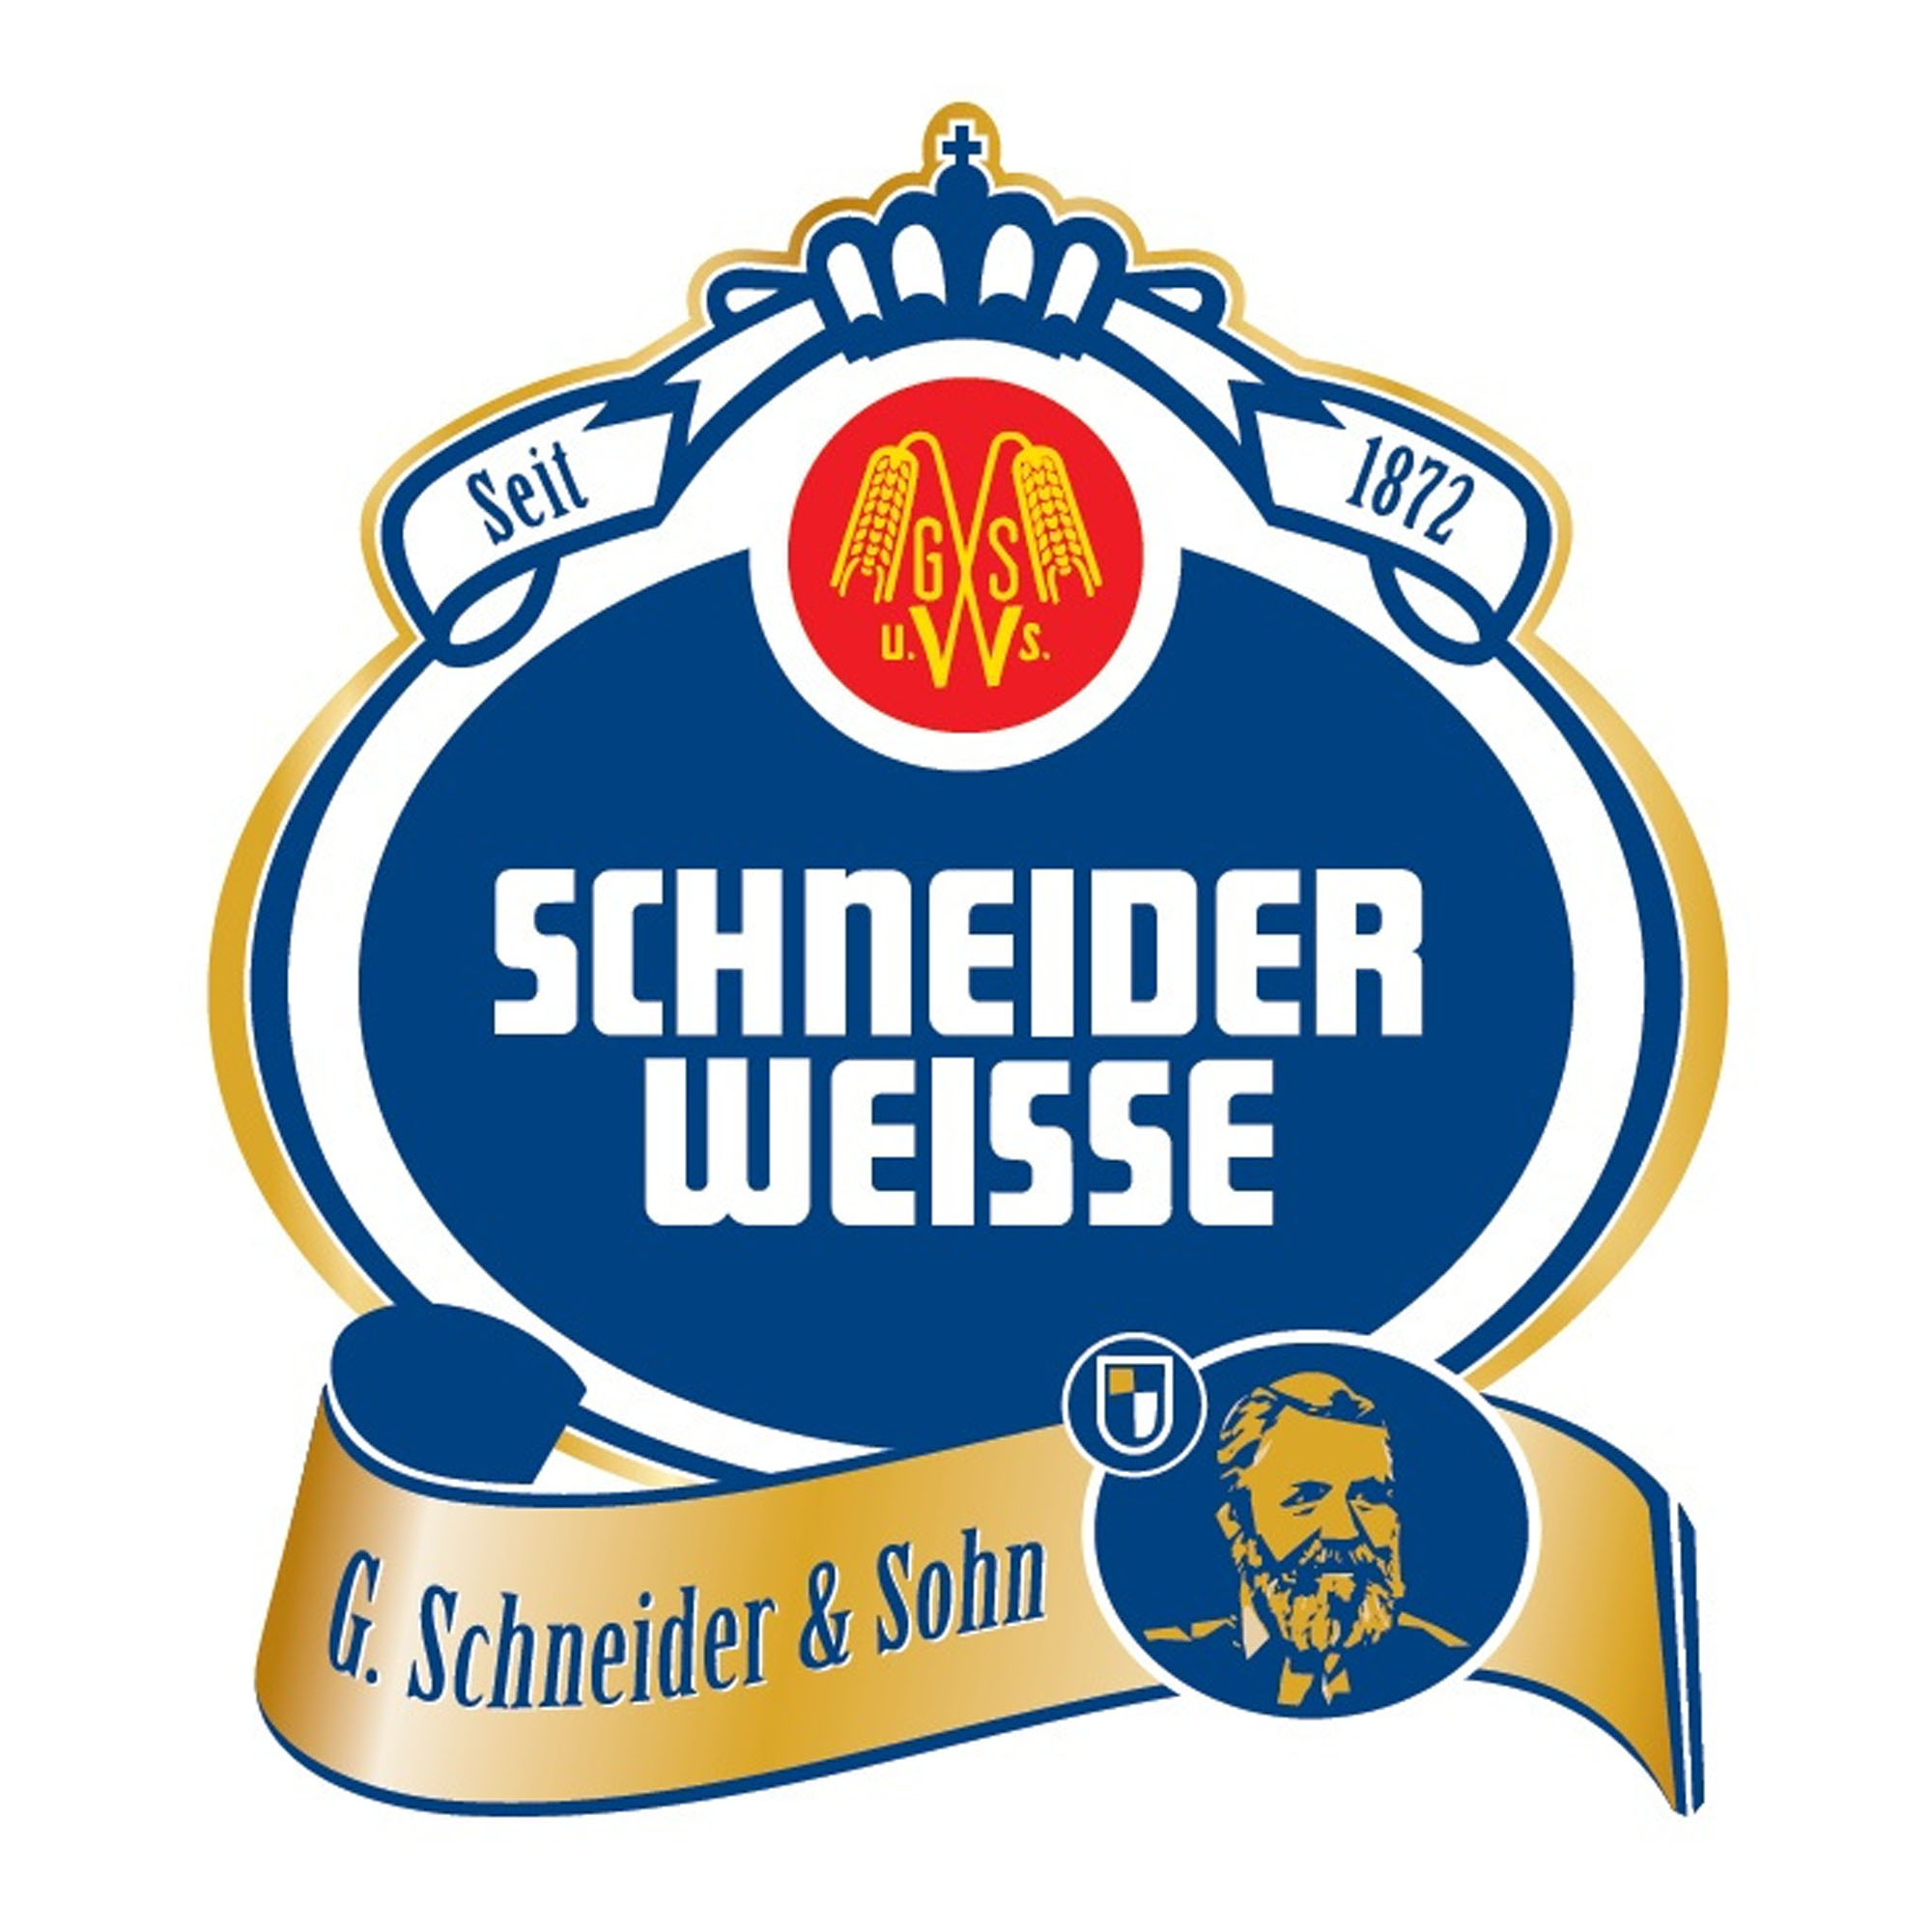 Schneider Festweisse Tap 4 Fust 20 ltr 6,2%